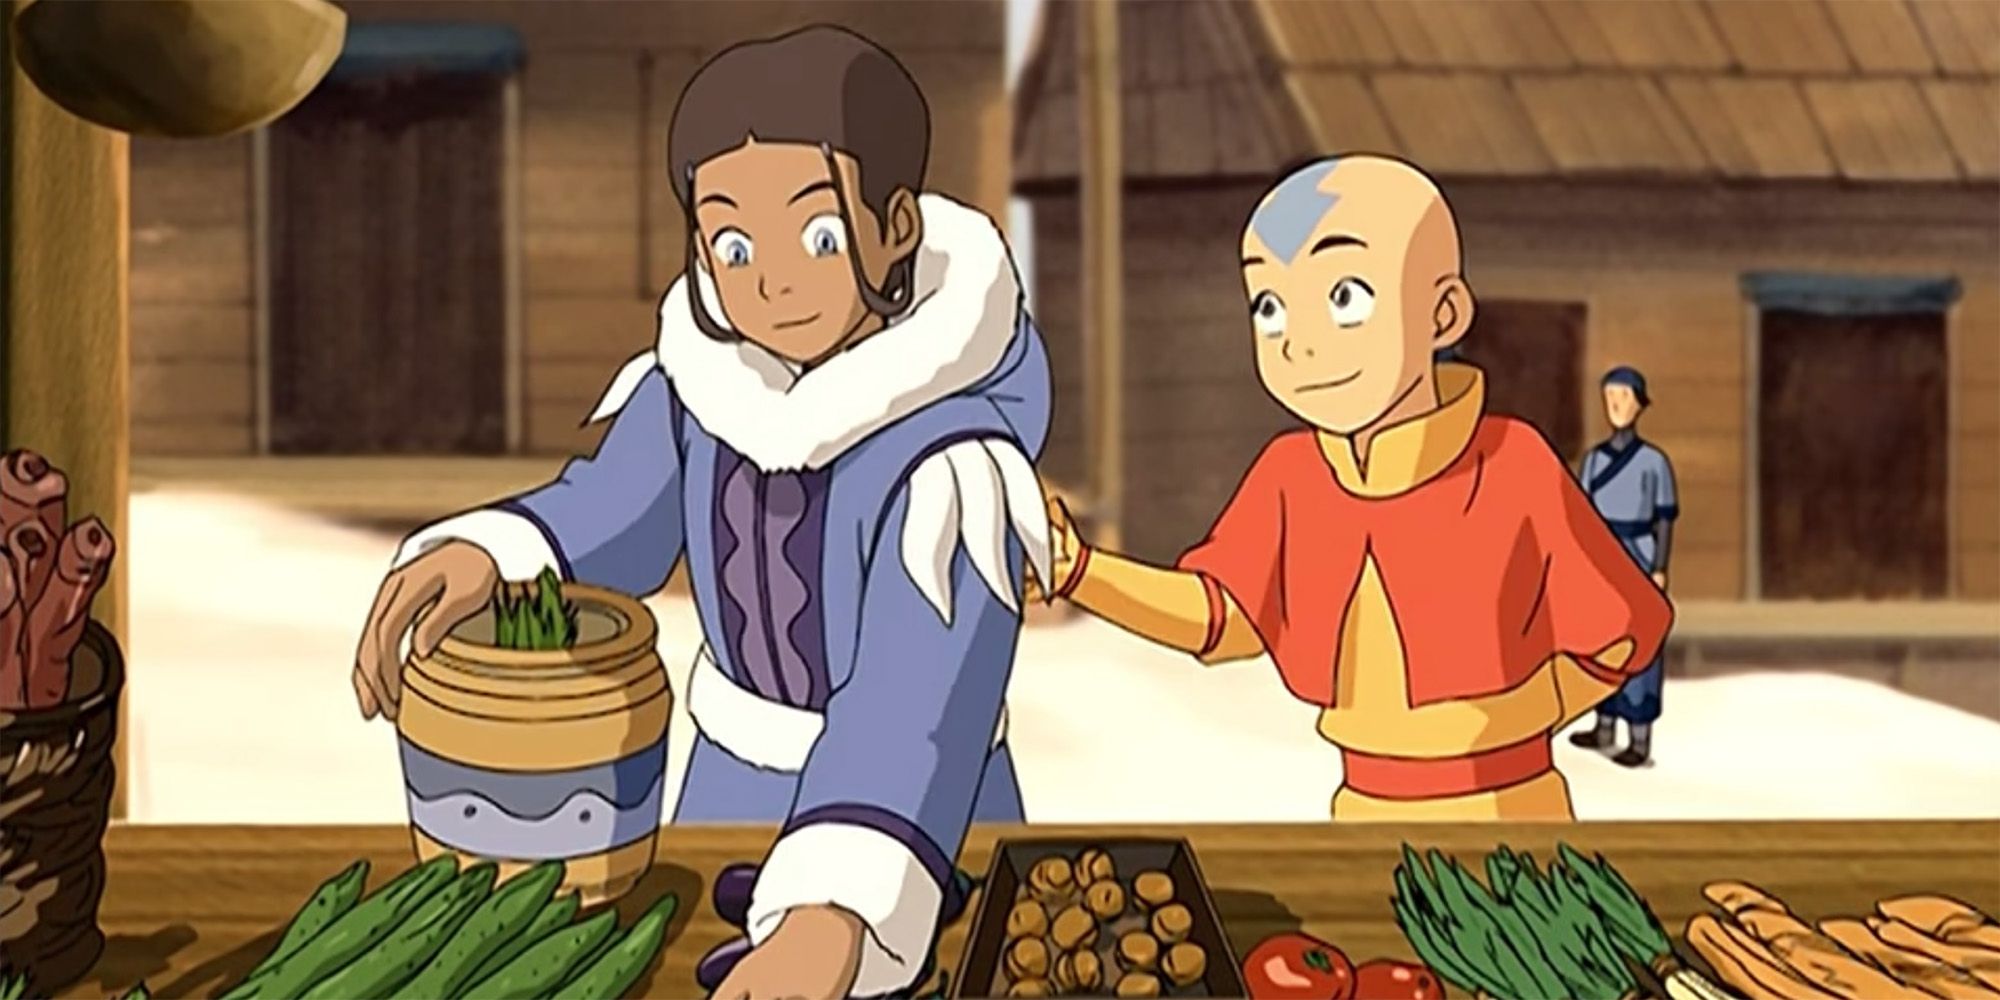 Los actores de Avatar: Last Airbender Aang y Katara posan juntos en nuevas imágenes